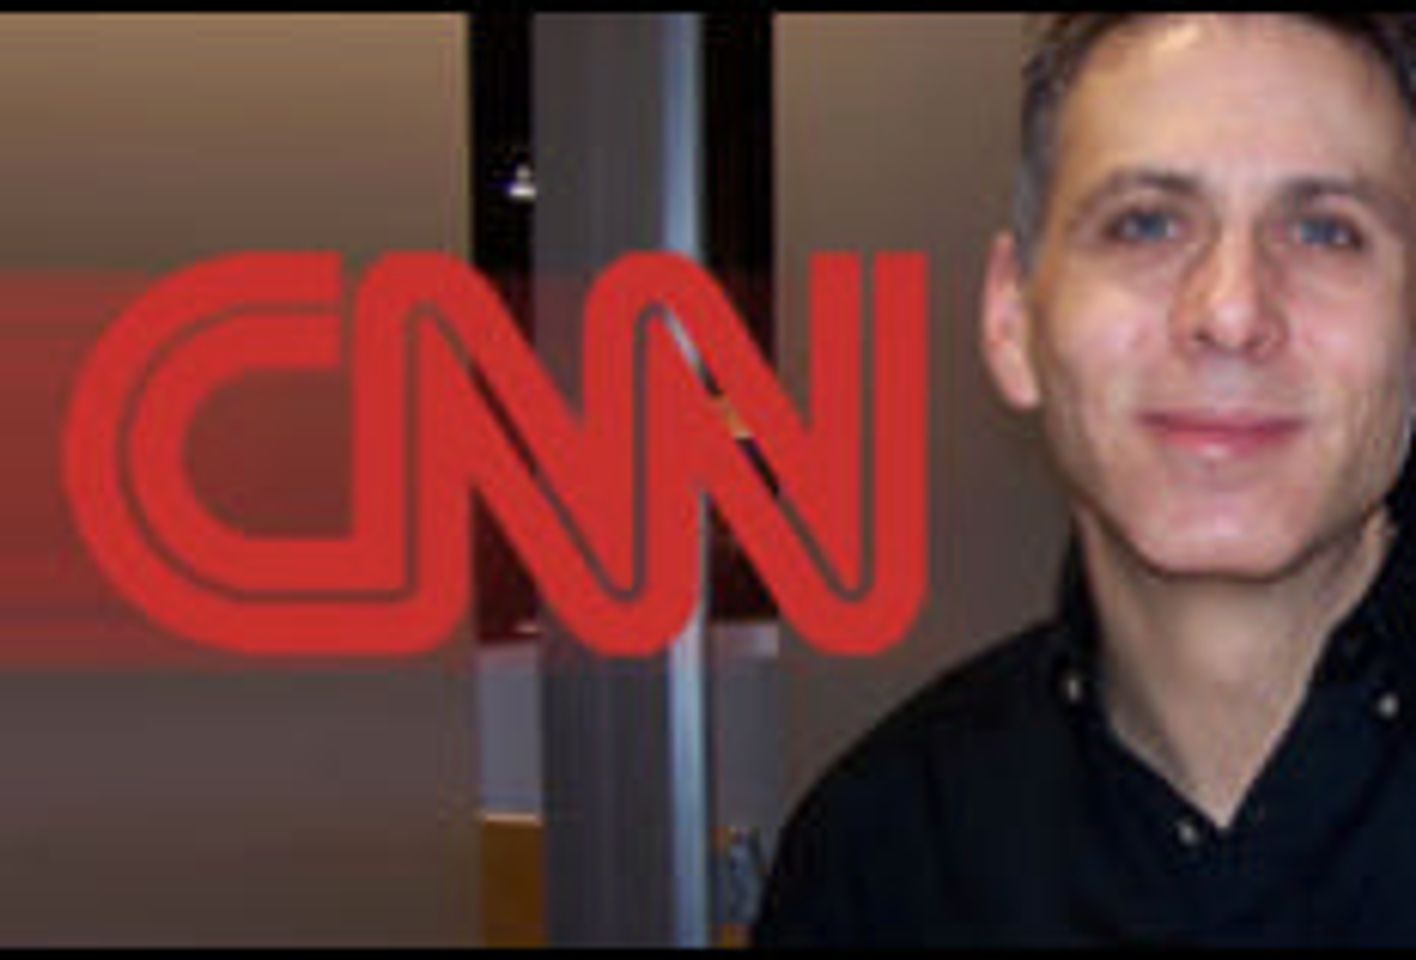 Paul Fishbein to go on CNN’s ‘Glenn Beck Show’